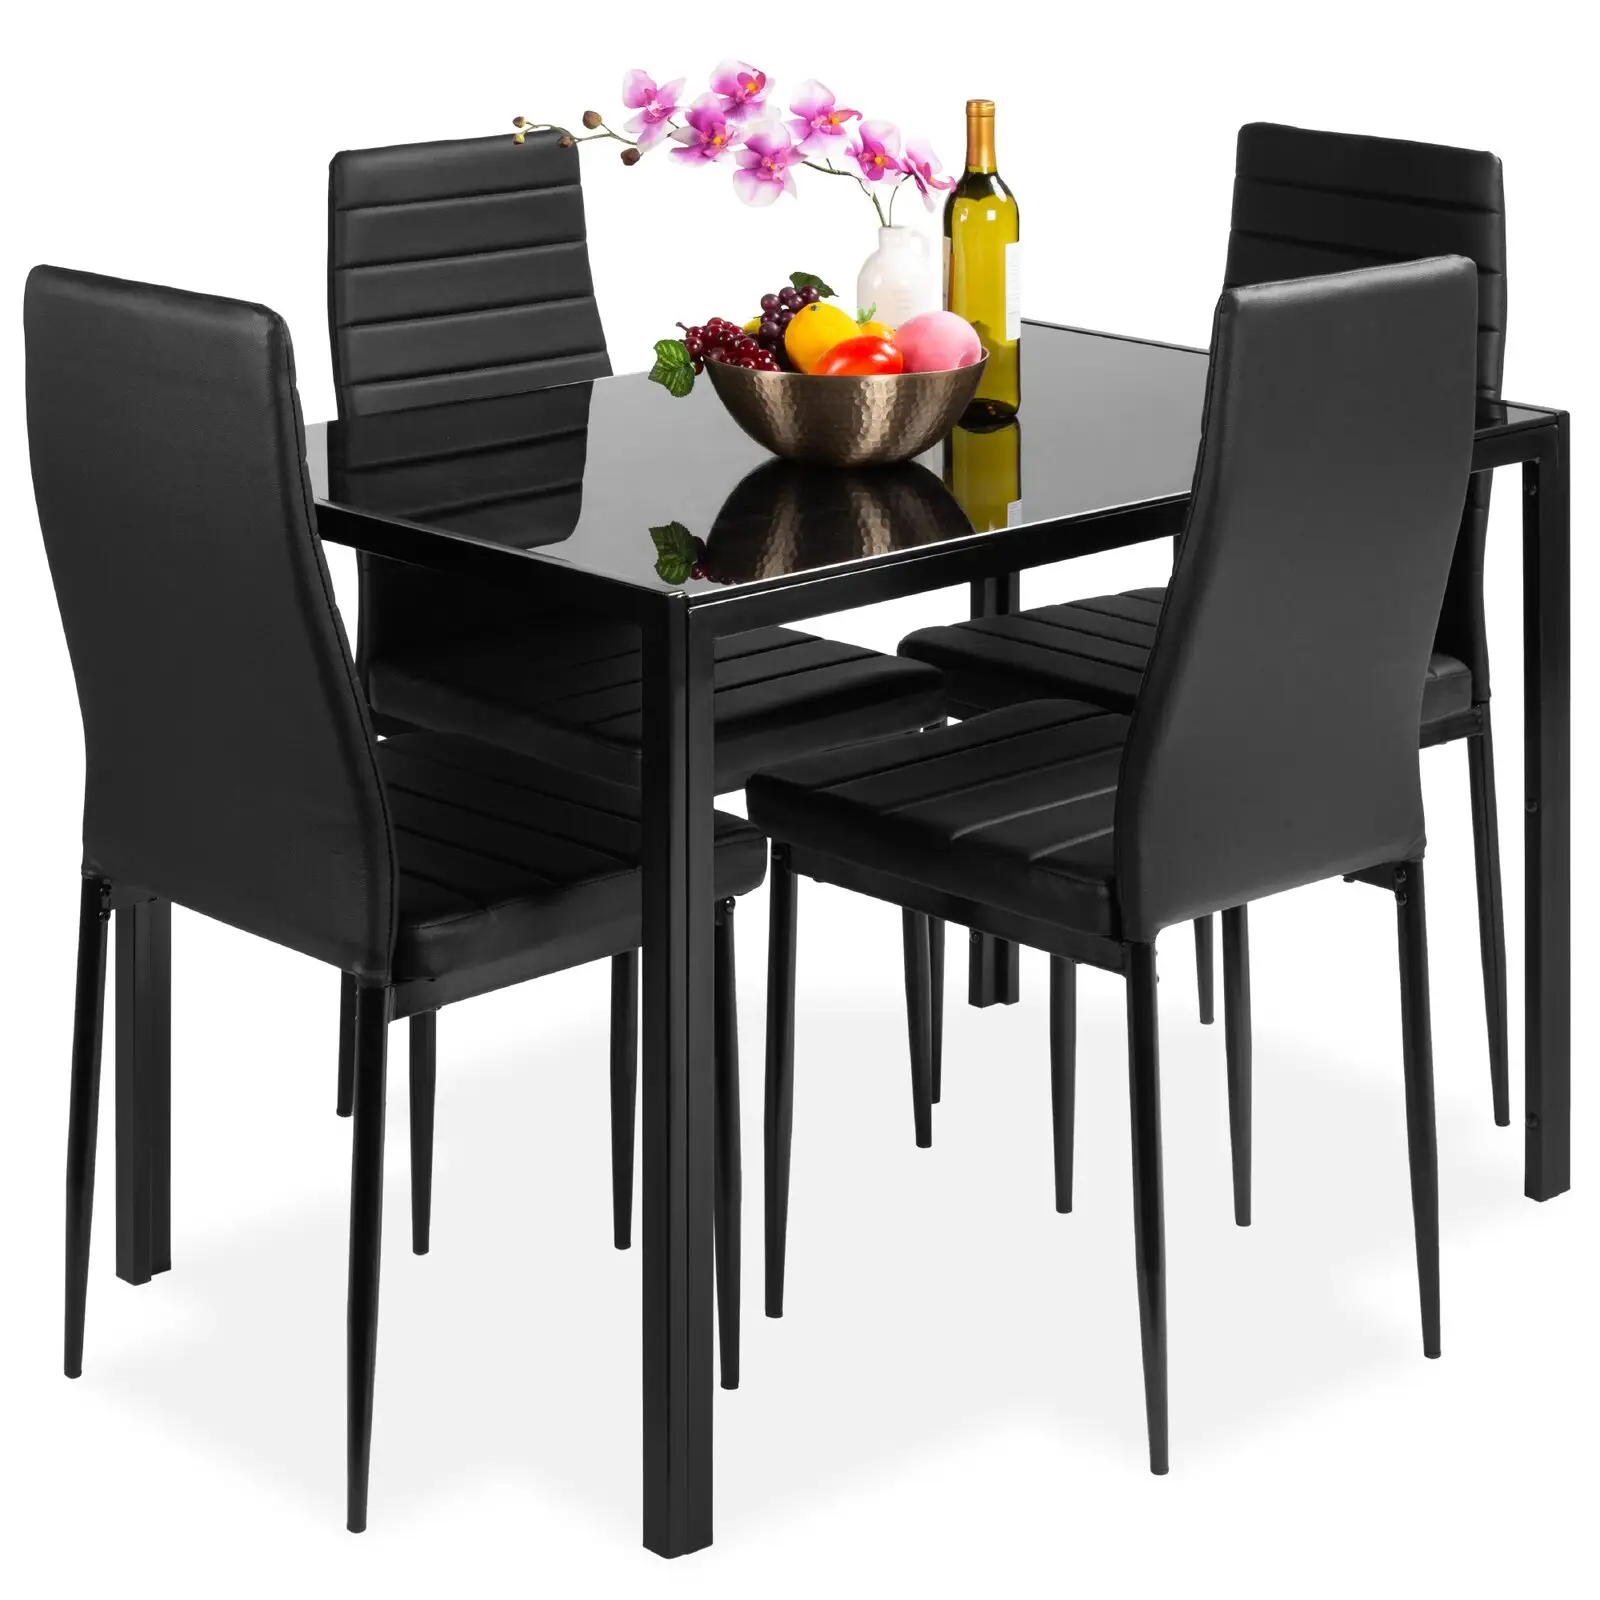 โต๊ะรับประทานอาหารกระจกสีดำทันสมัยพร้อมเก้าอี้4ชุดครัวห้องรับประทานอาหาร